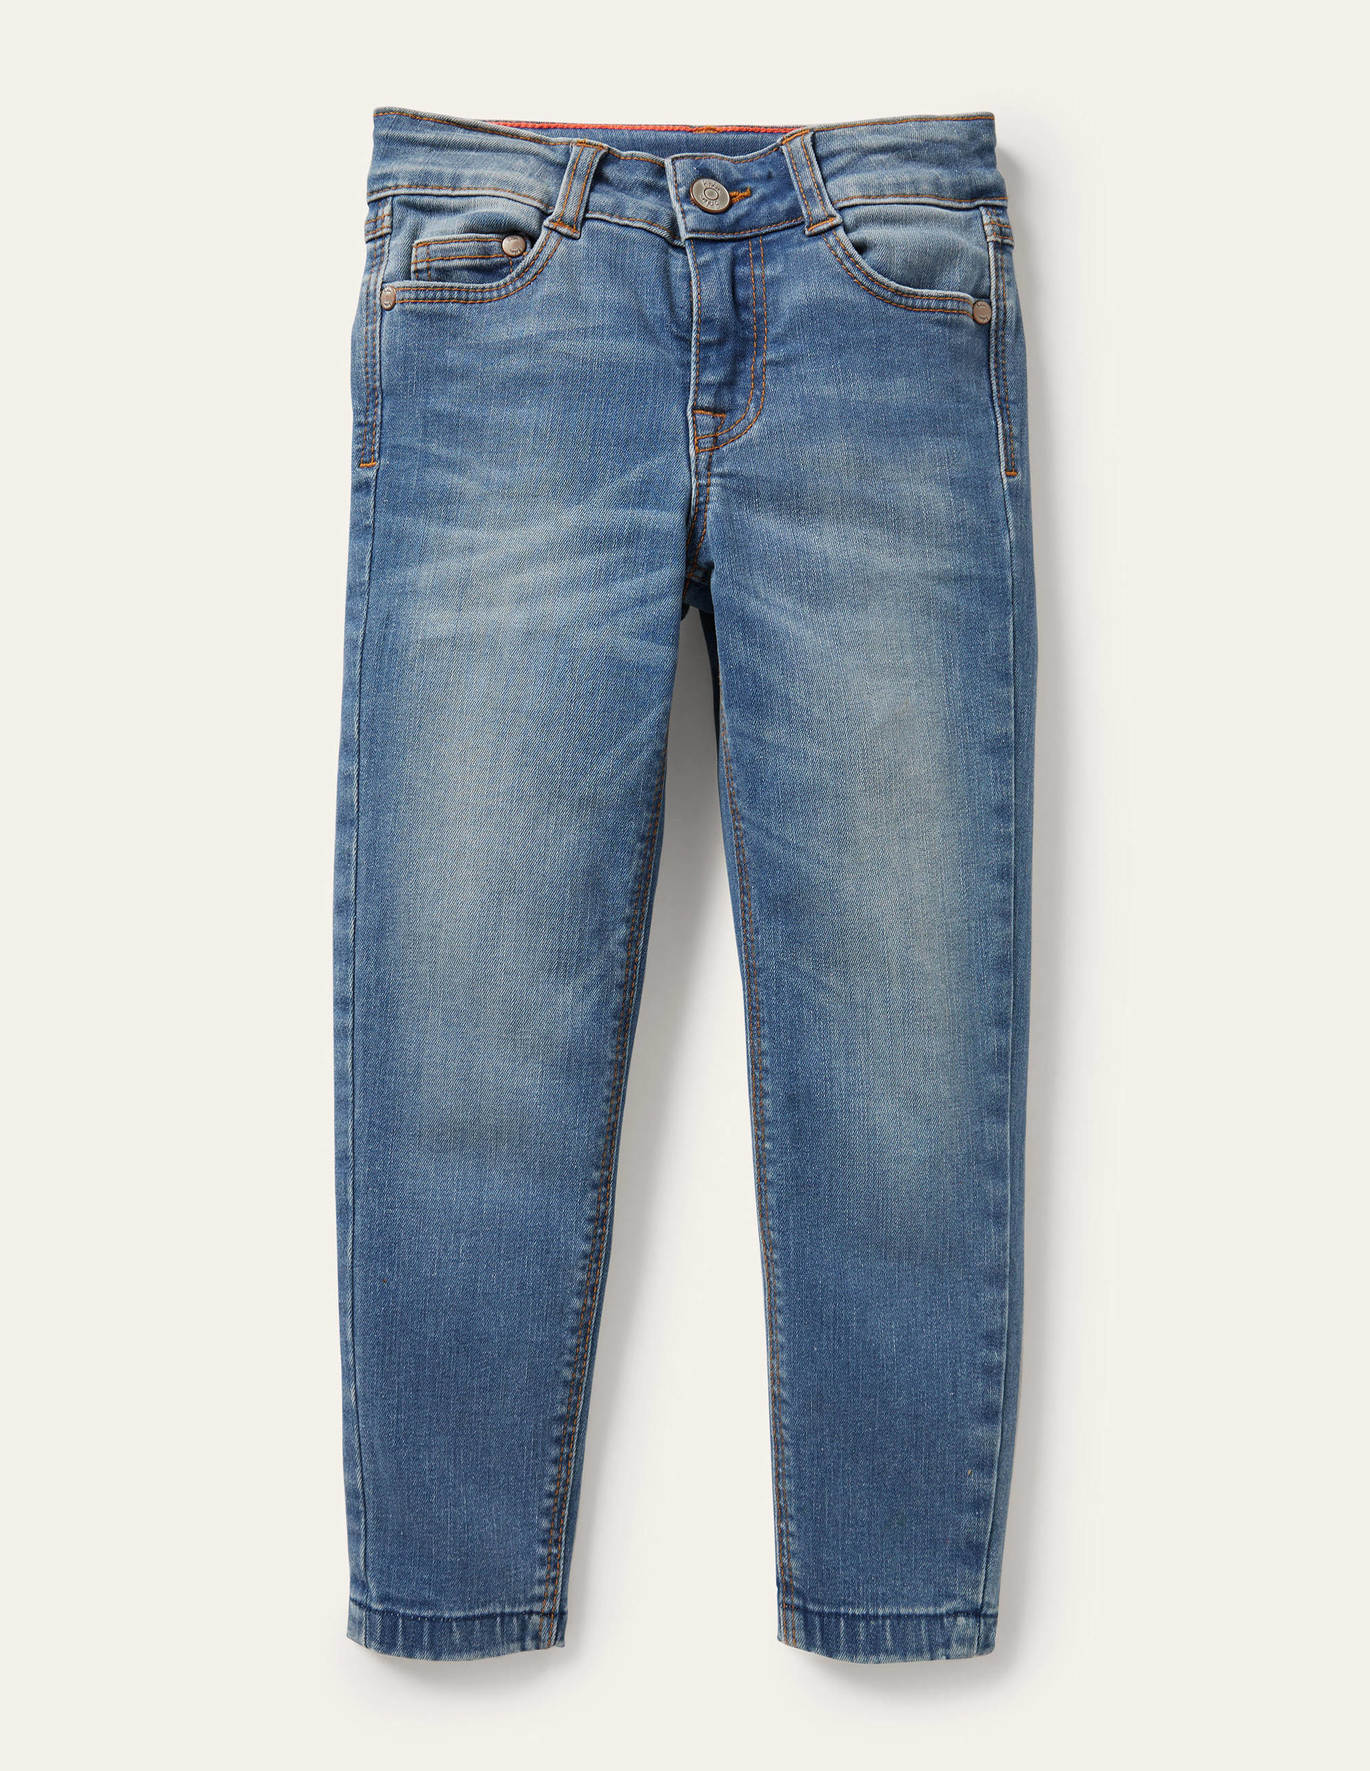 Boden Superstretch Skinny Jeans - Light Vintage Denim